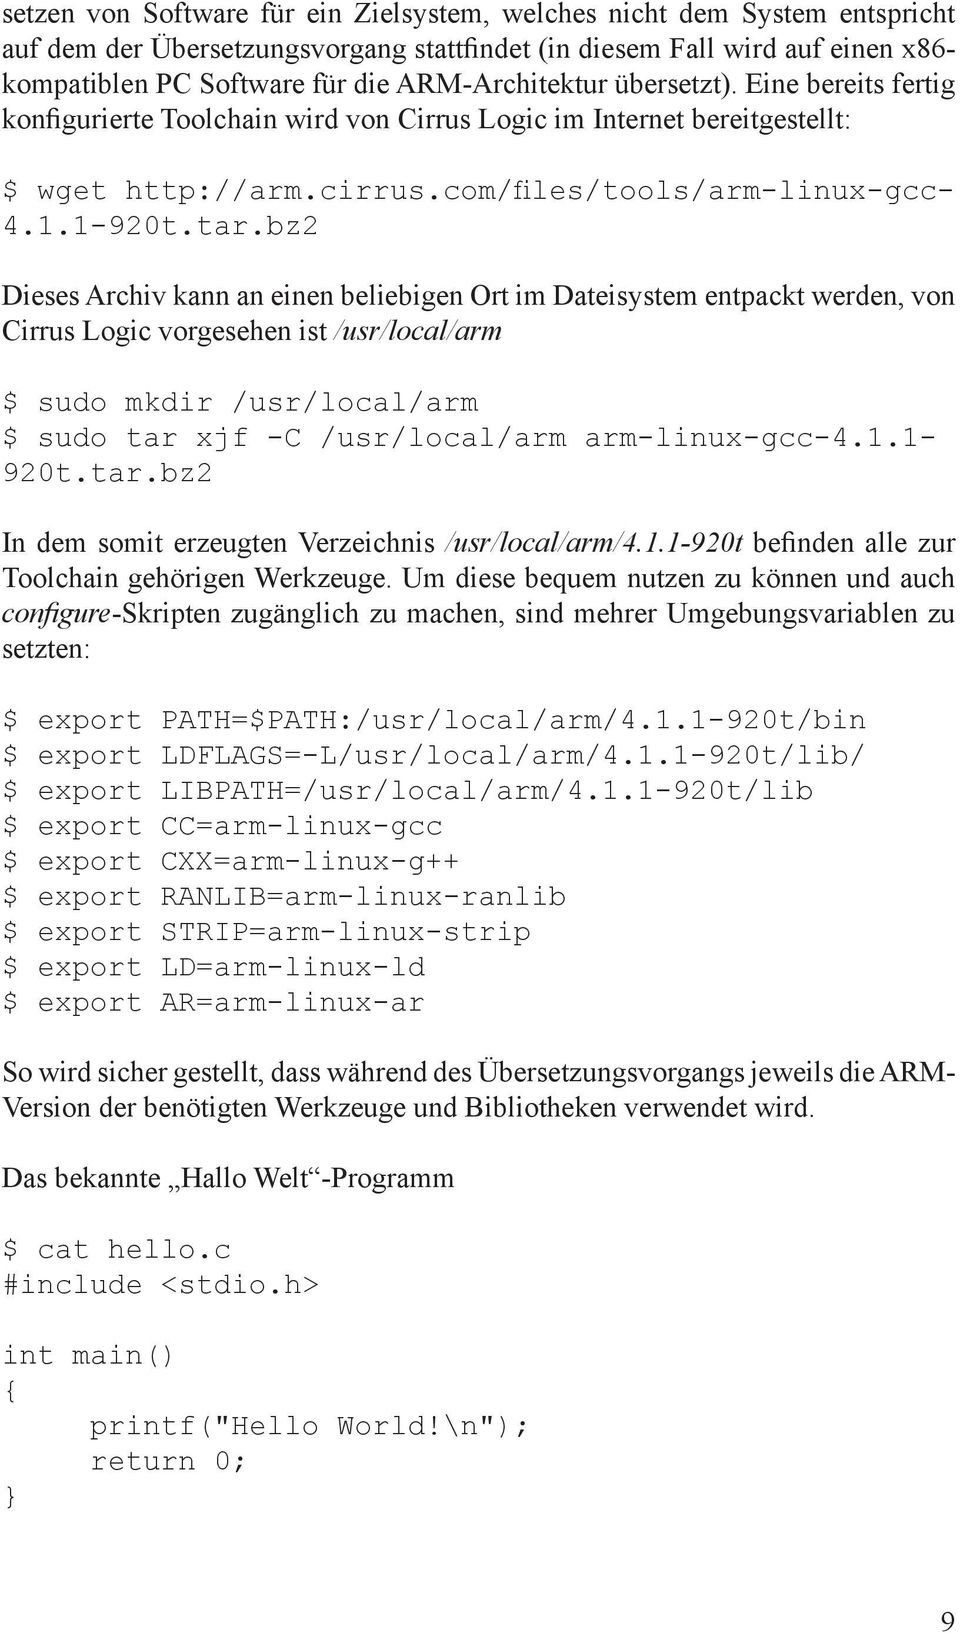 com/files/tools/arm-linux-gcc- 4.1.1-920t.tar.